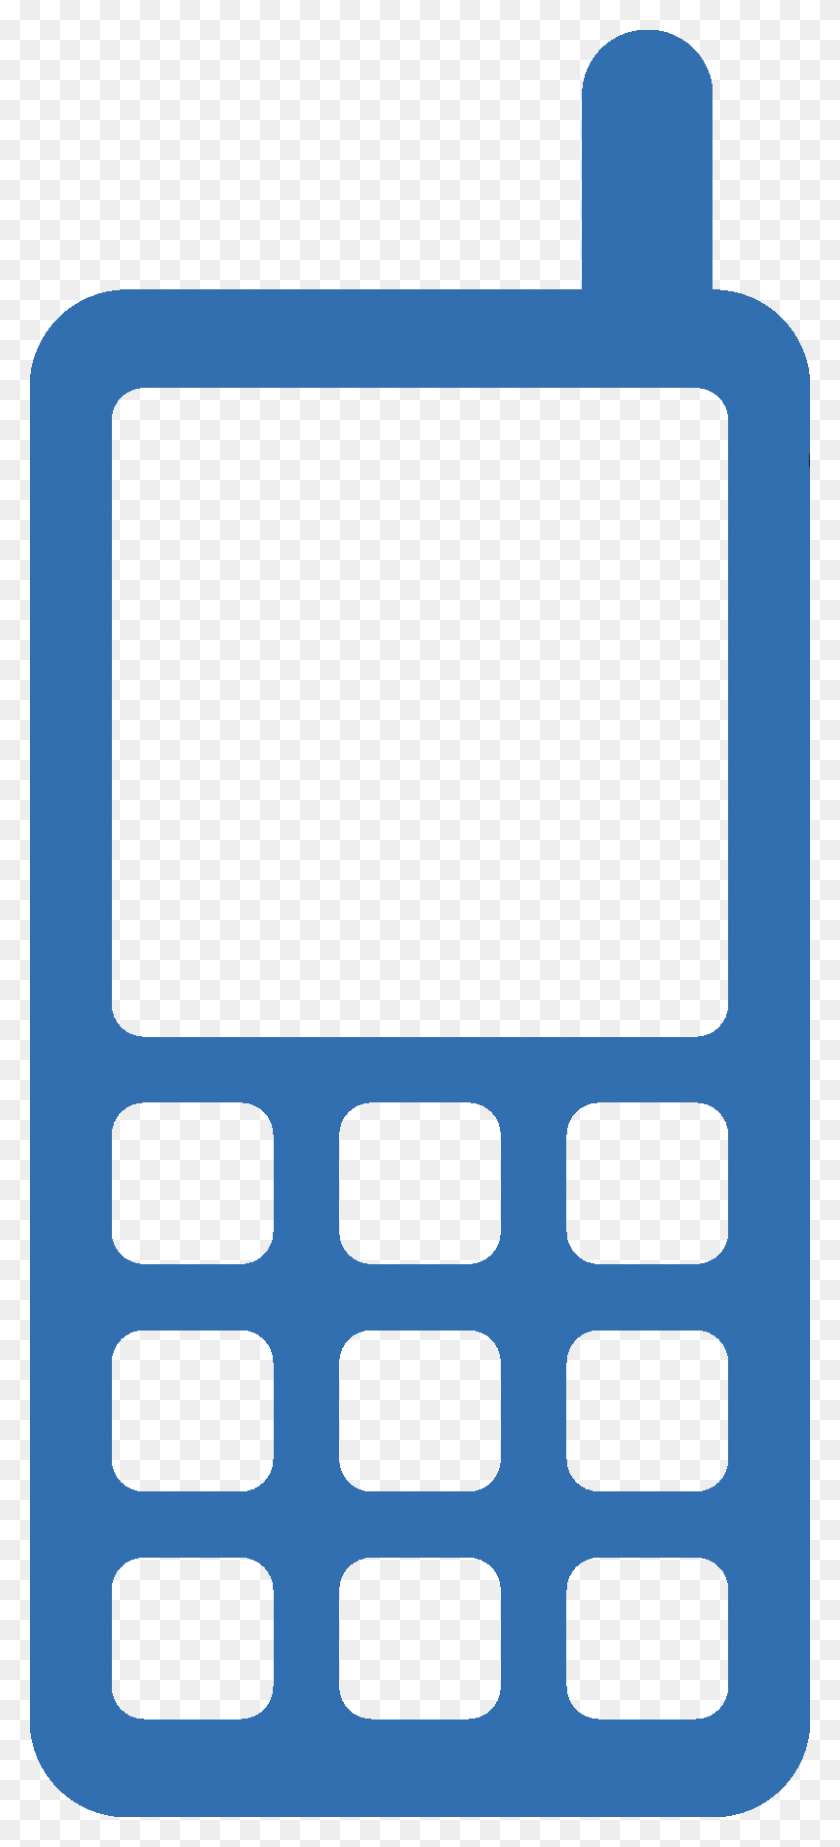 800x1833 Карандаш Для Мобильного Телефона Зеленый Клипарт И Цветной Синий Значок Мобильного Телефона, Крест, Символ, Лицо Hd Png Скачать